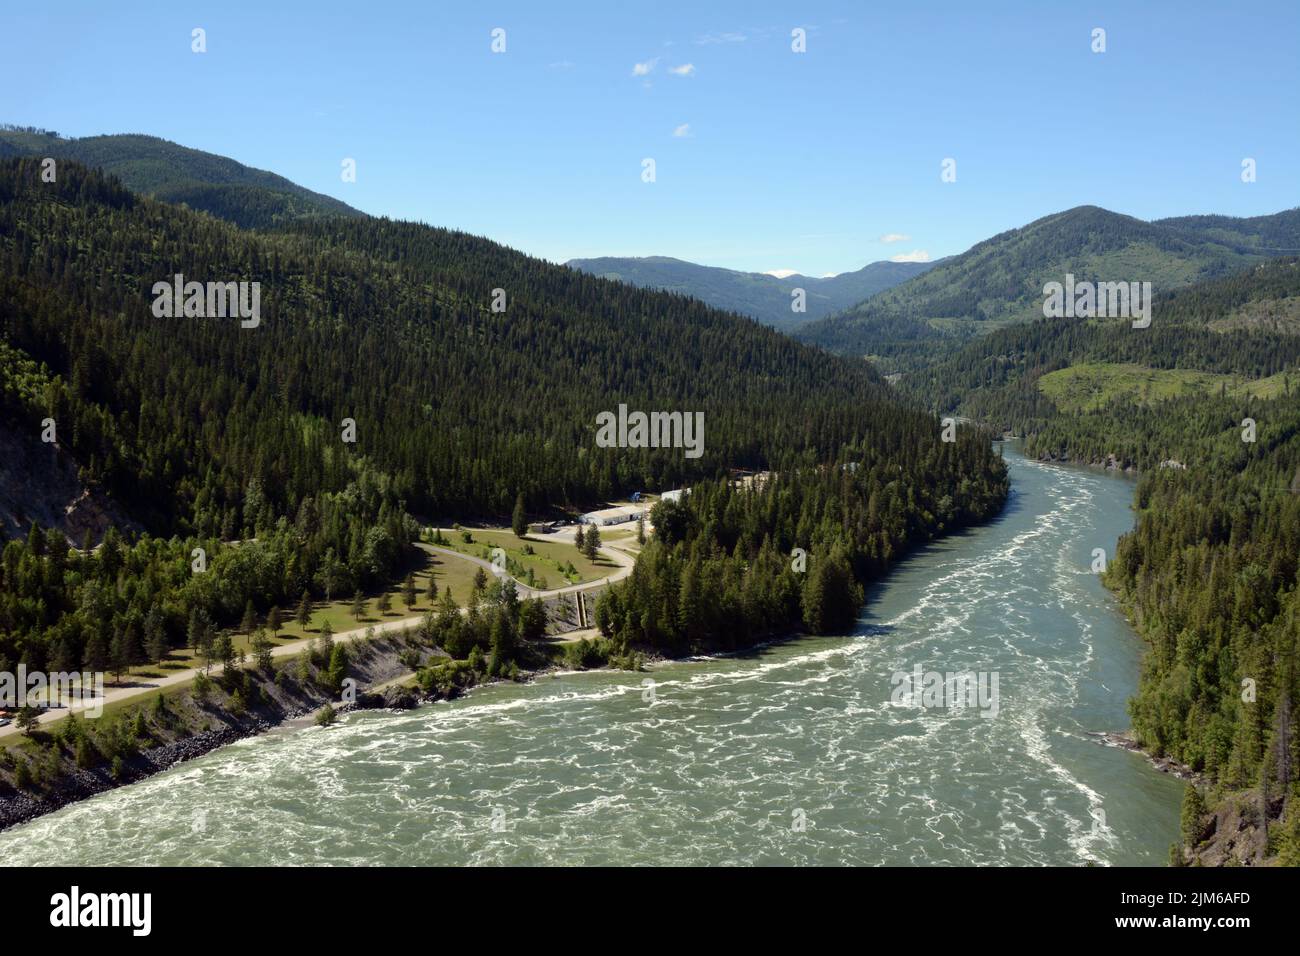 Il fiume Pend-Oreille, che scorre in Canada, dagli Stati Uniti, dopo aver attraversato la diga di Boundary, vicino a Metaline Falls, Washington state, USA. Foto Stock